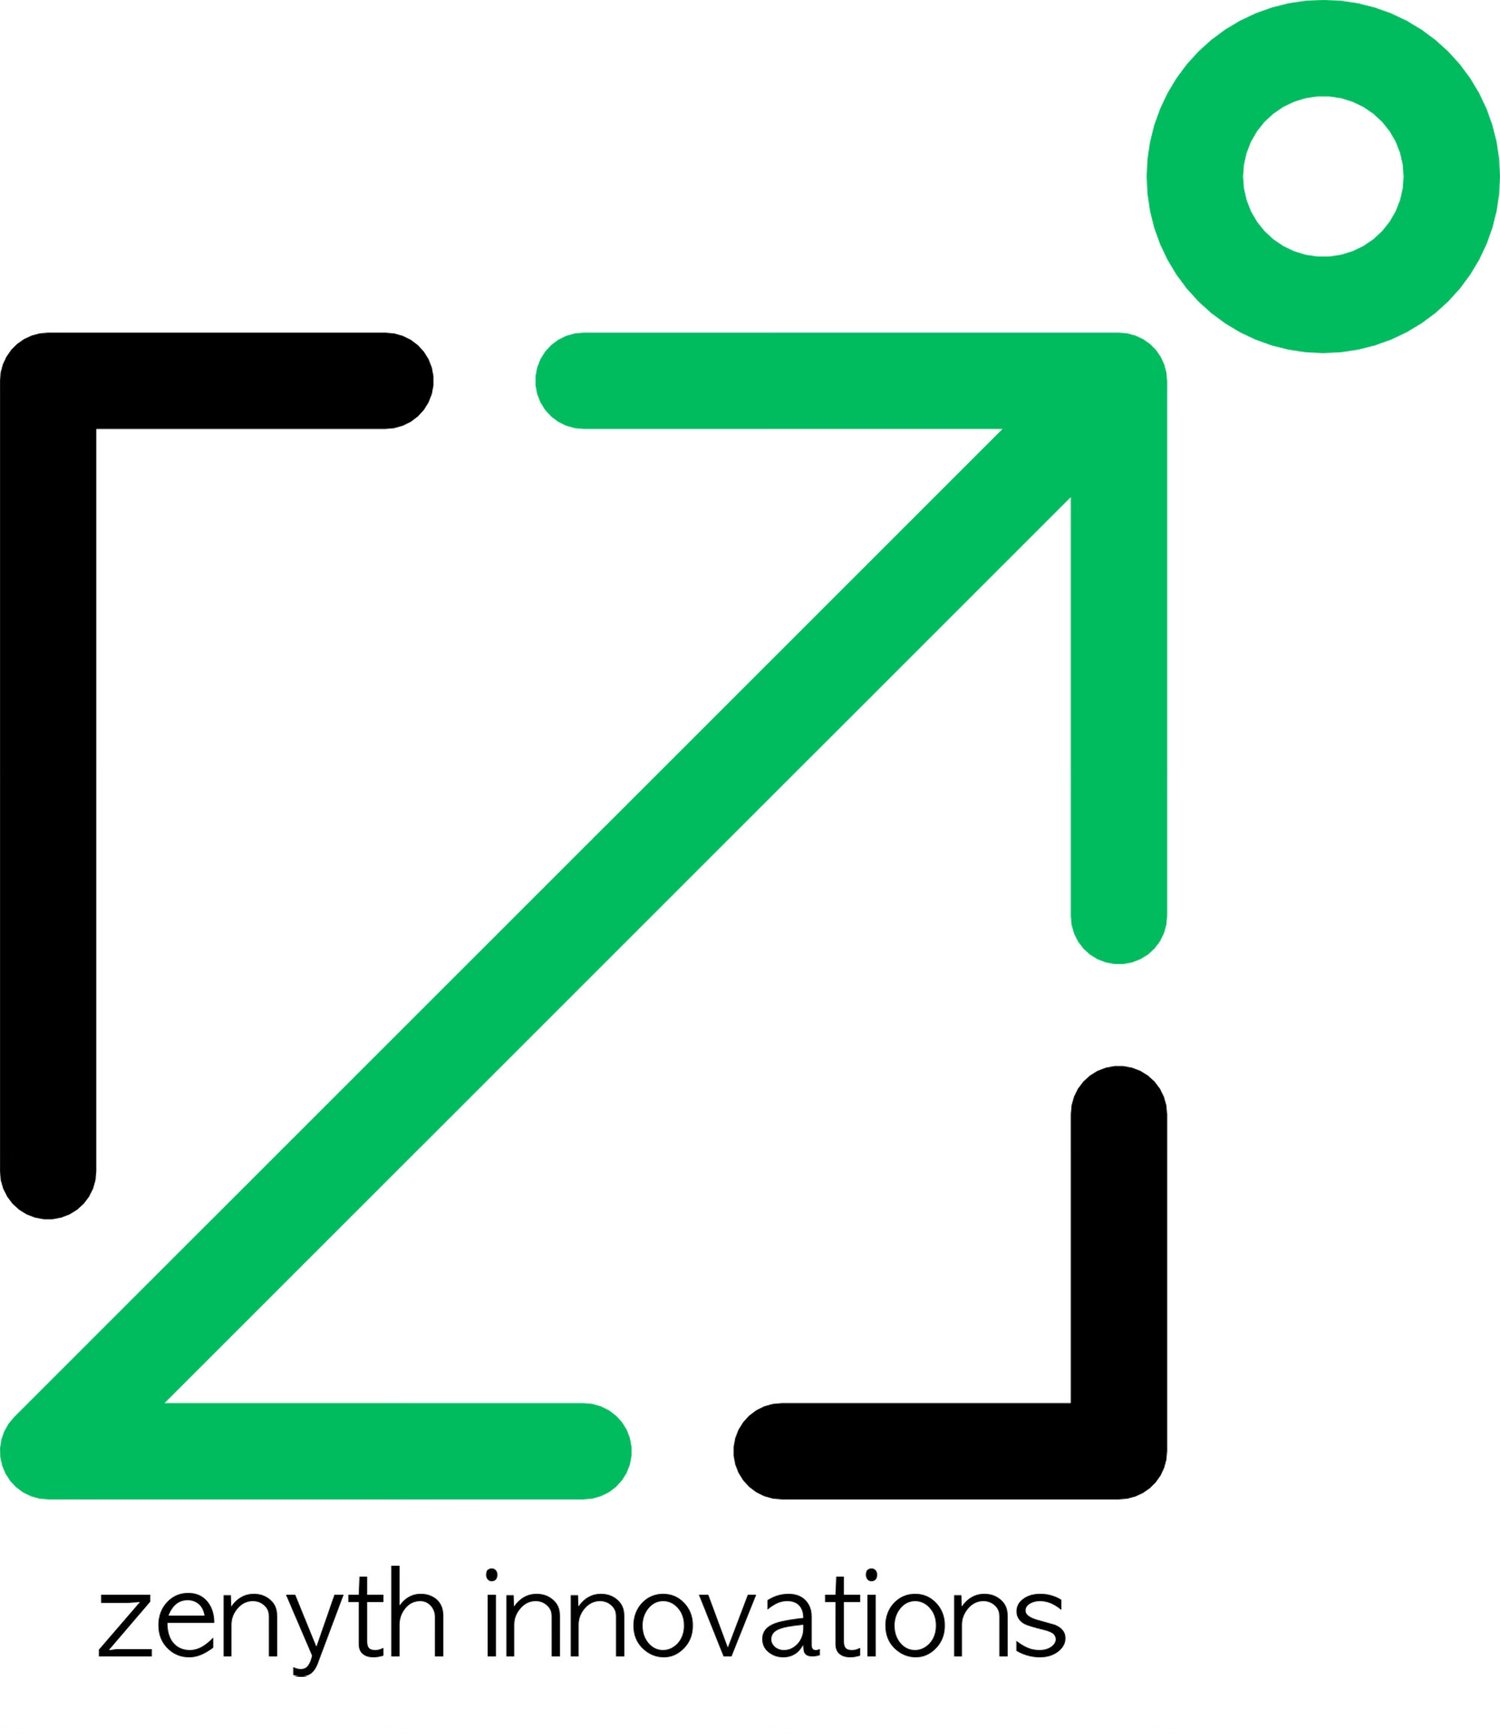 Zenyth Innovations